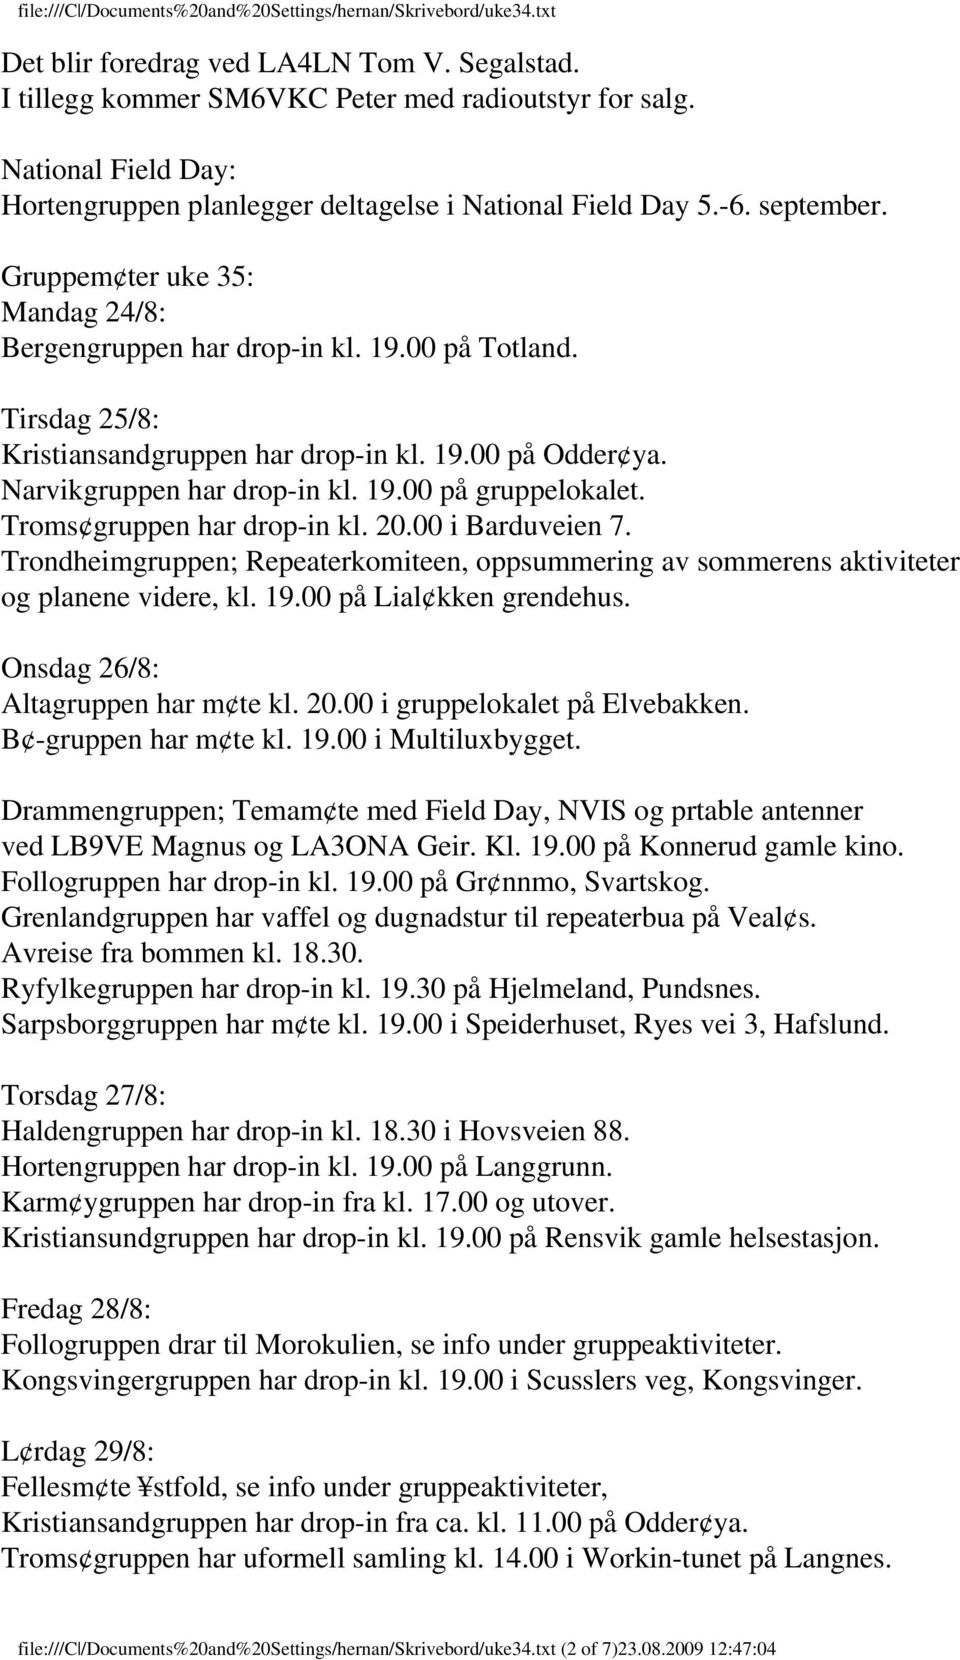 Troms gruppen har drop-in kl. 20.00 i Barduveien 7. Trondheimgruppen; Repeaterkomiteen, oppsummering av sommerens aktiviteter og planene videre, kl. 19.00 på Lial kken grendehus.